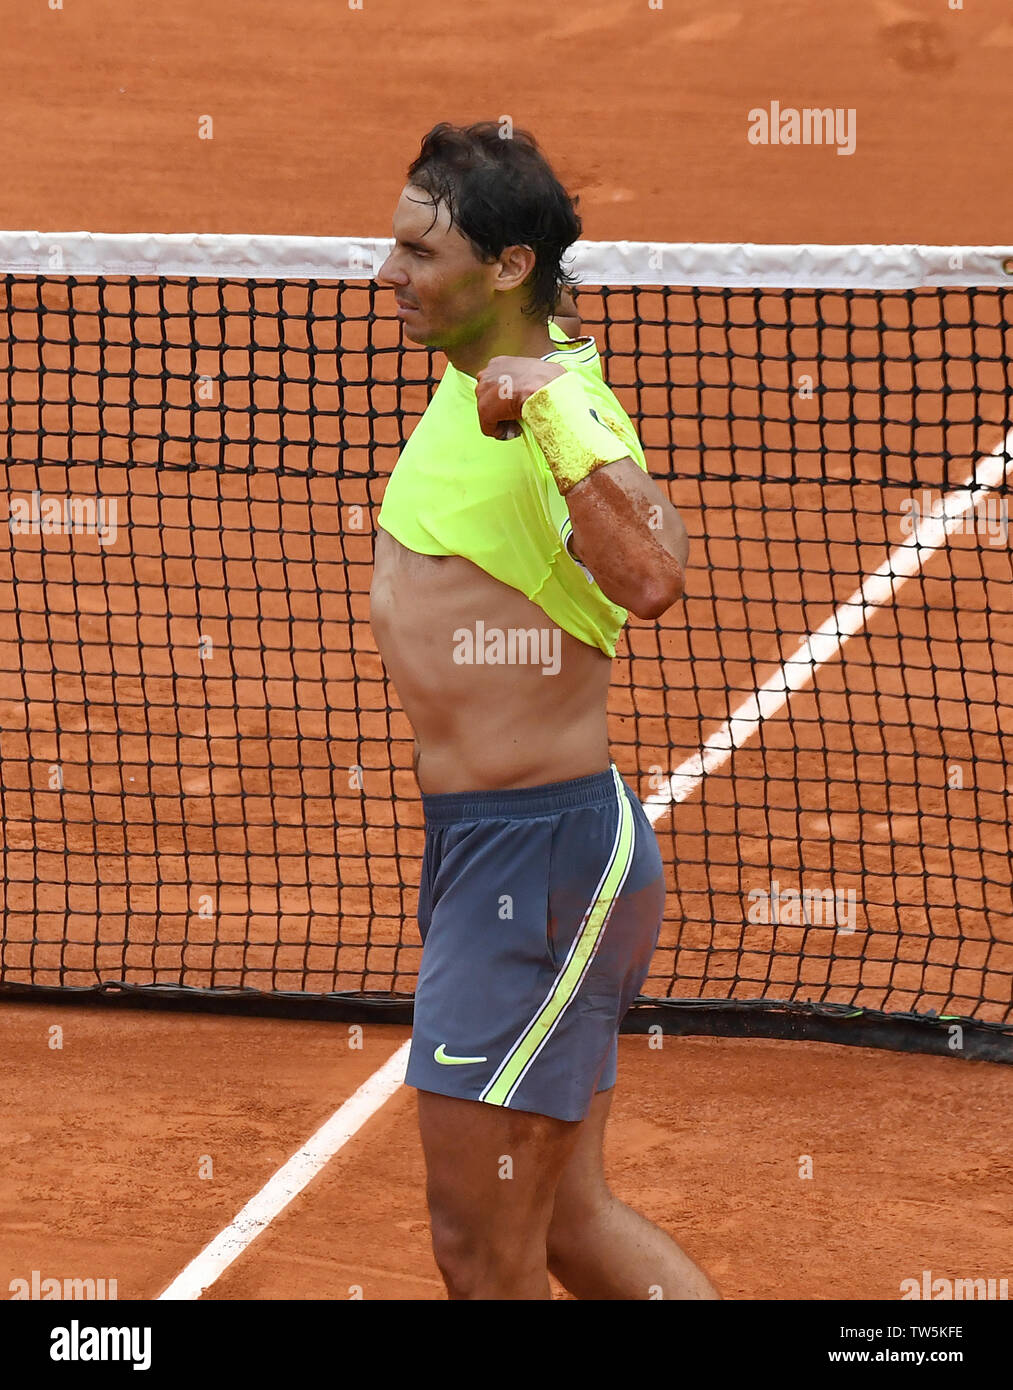 Parigi Francia French Open Championships Roland Garros Rafa Nadal (ESP) celebra il suo fan come ha vinto un record xii Mens singles titolo foto Rog Foto Stock